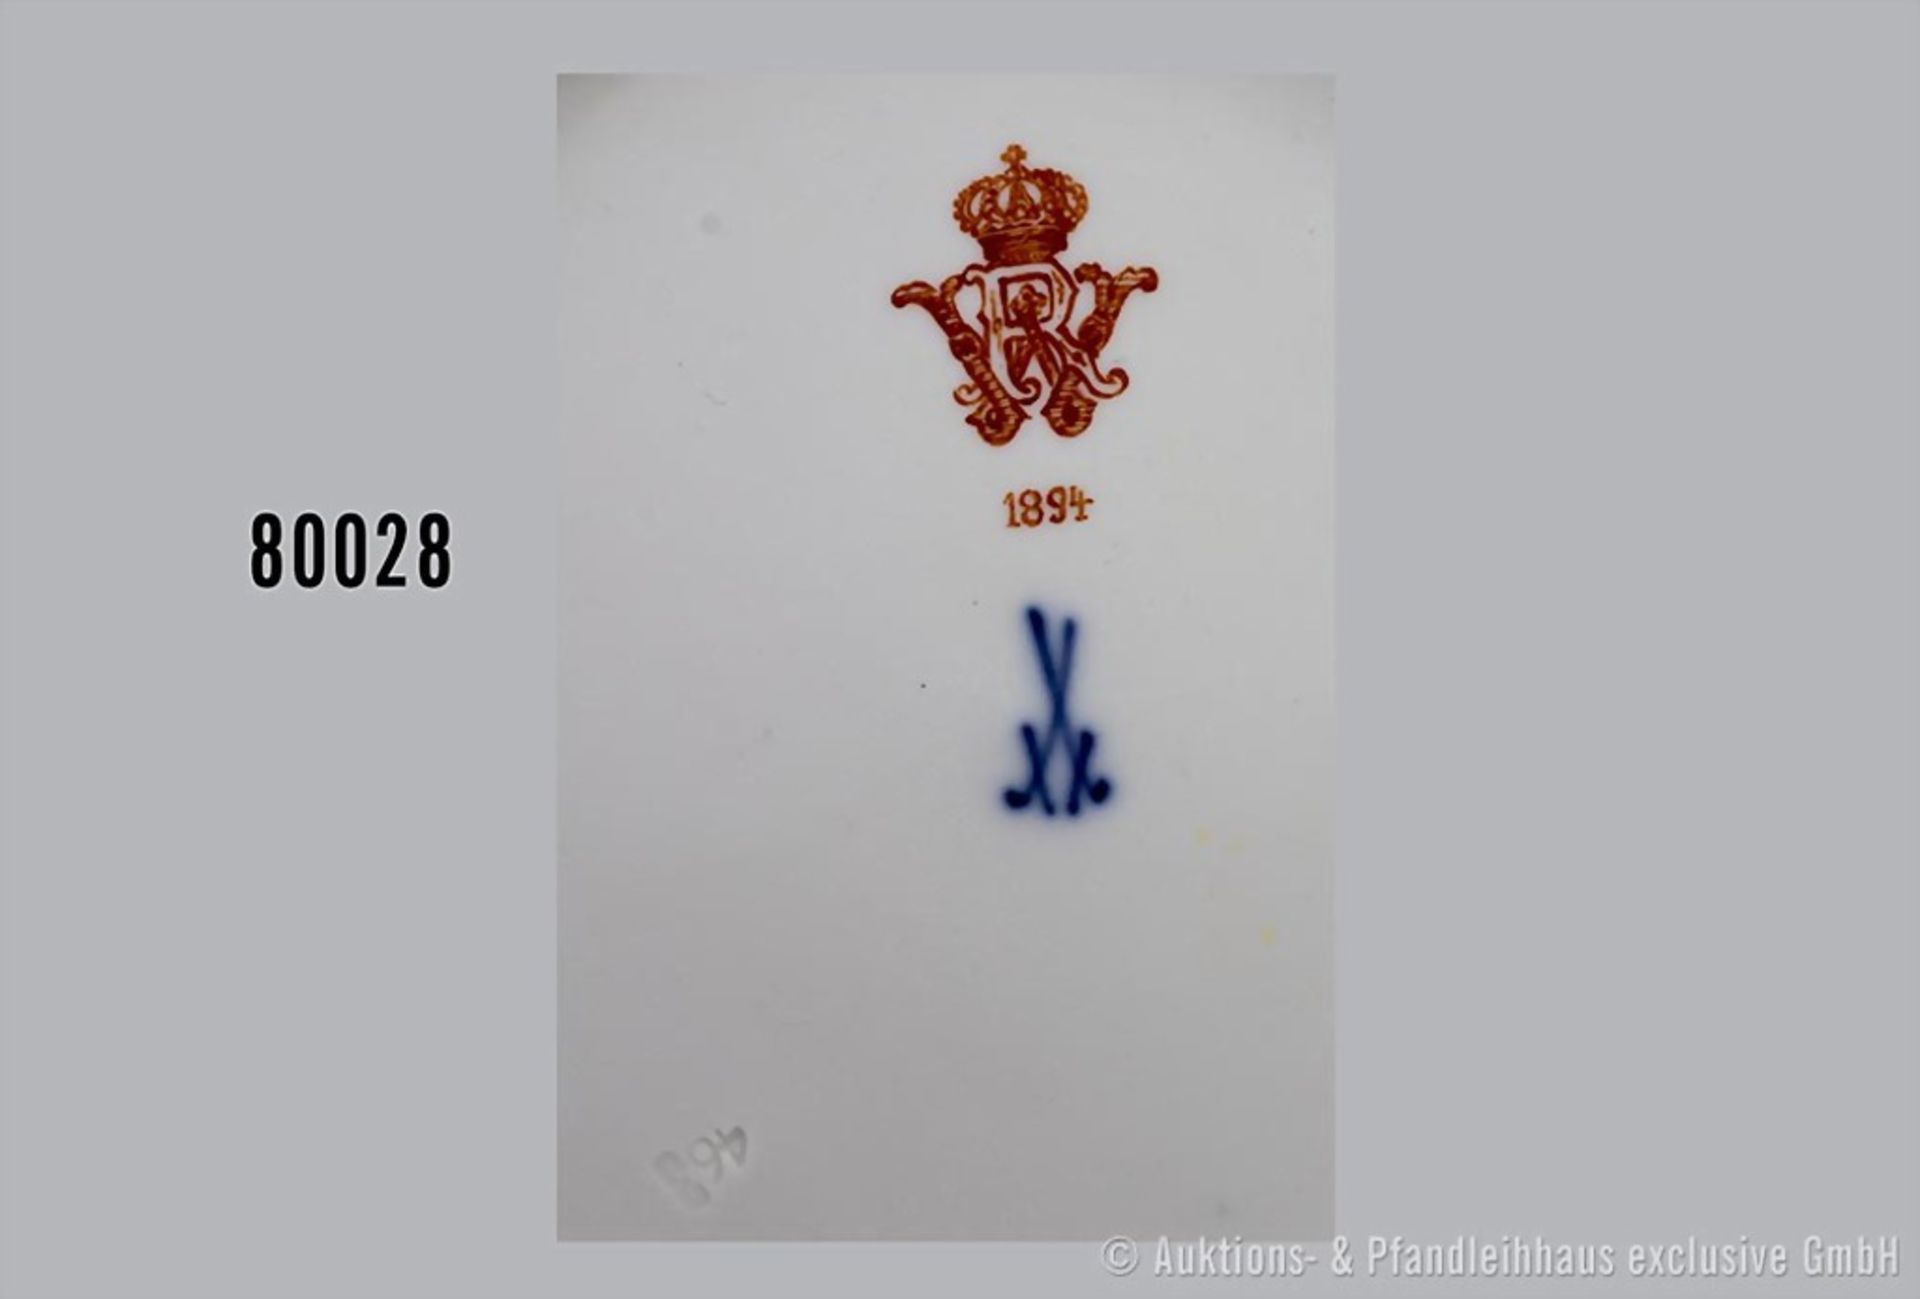 Konv. Porzellan Kuchenteller, D 20 cm und Untertasse, D 15 cm, Meissen, aus dem Service ... - Image 3 of 4